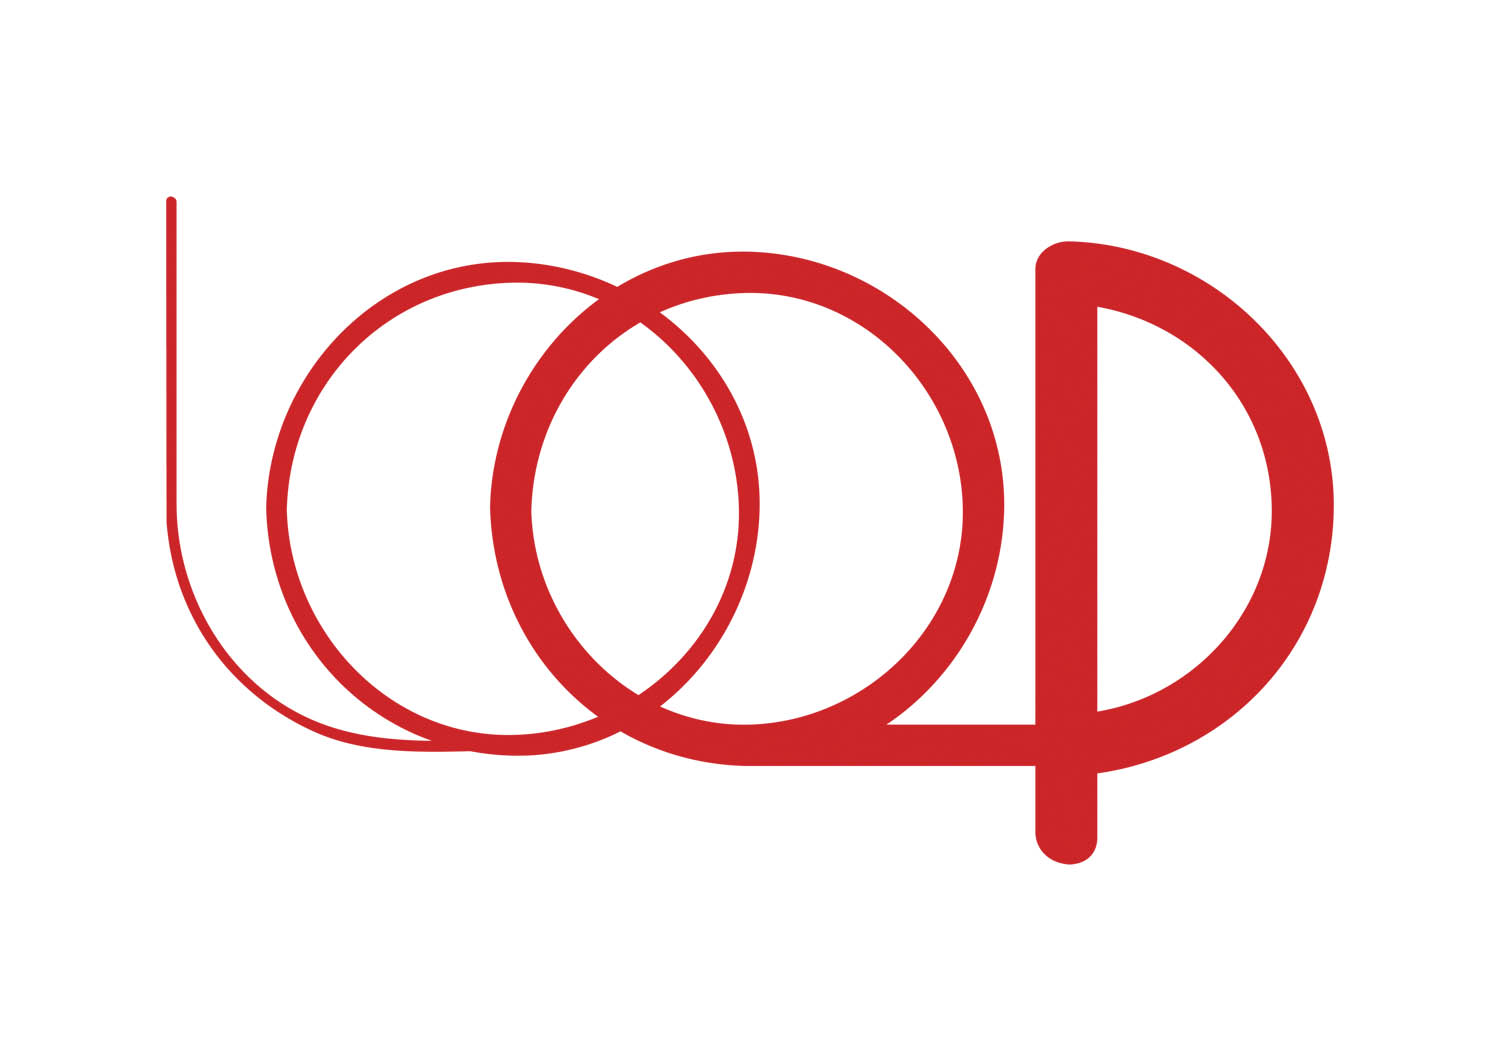 Le mot "loop" caligraphié en rouge